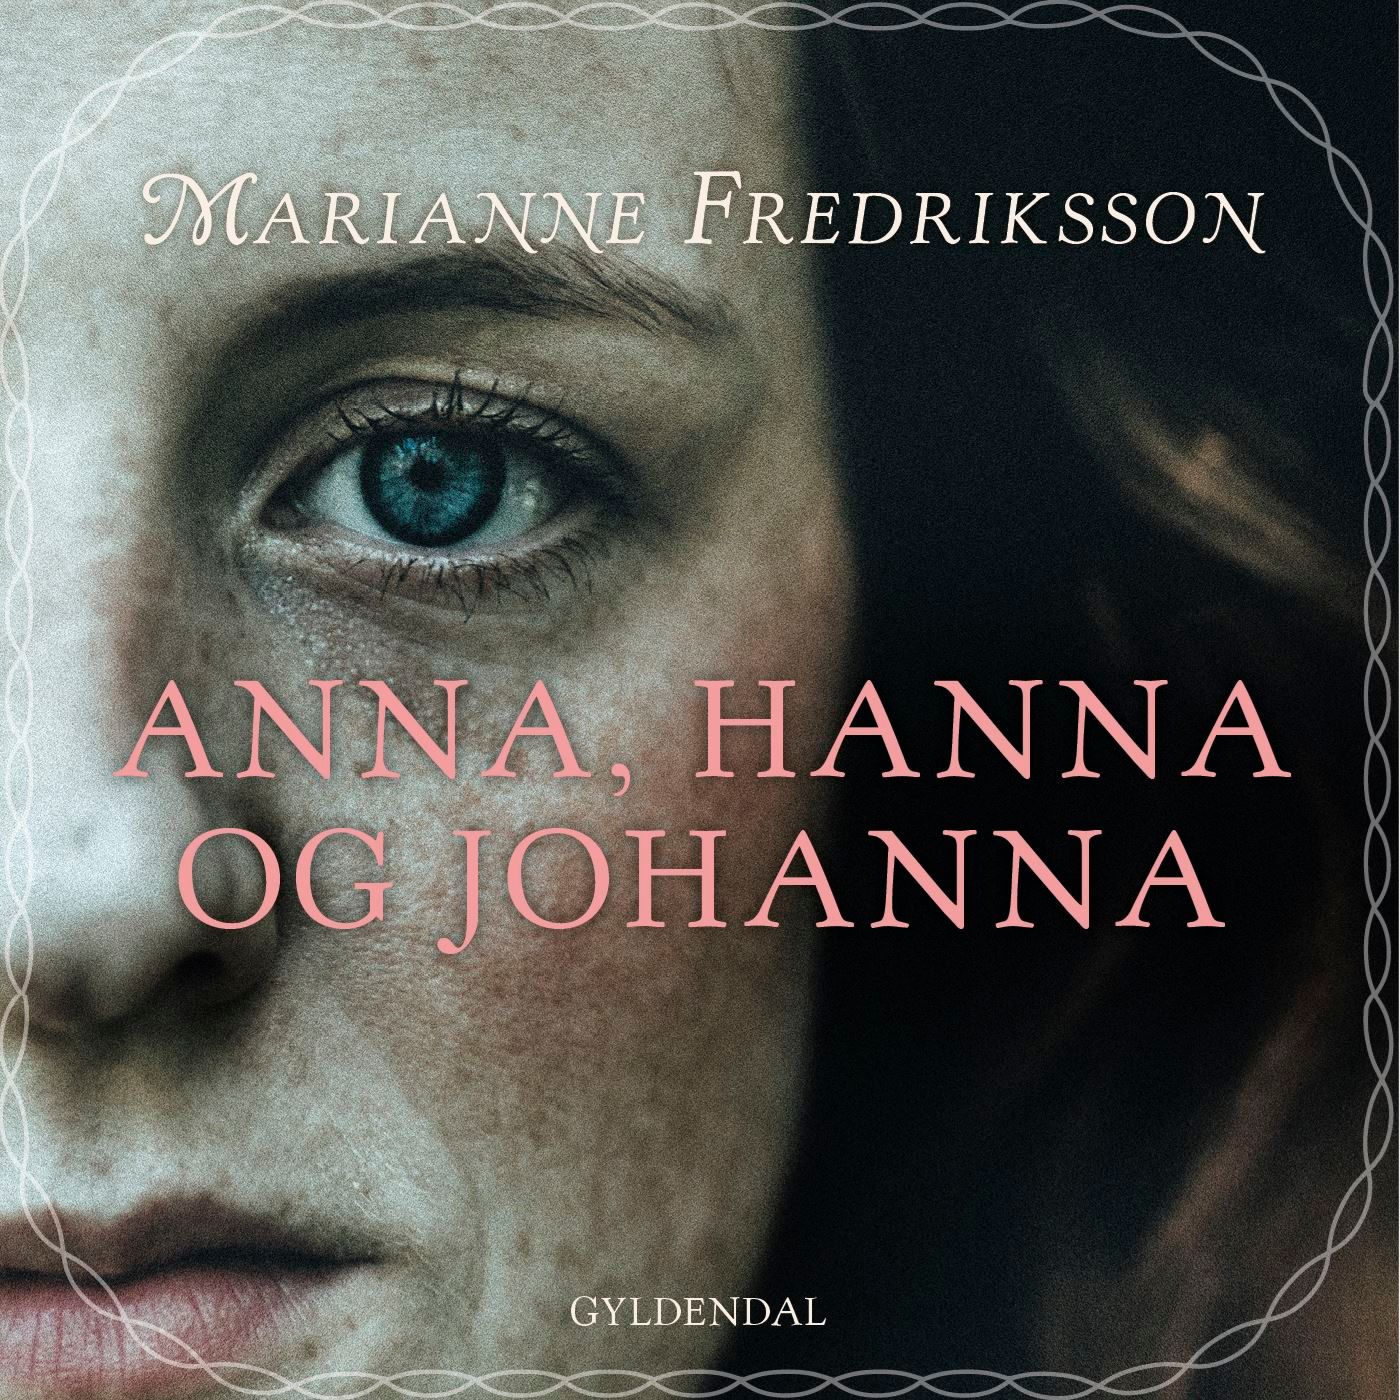 Anna, Hanna og Johanna, ljudbok av Marianne Fredriksson